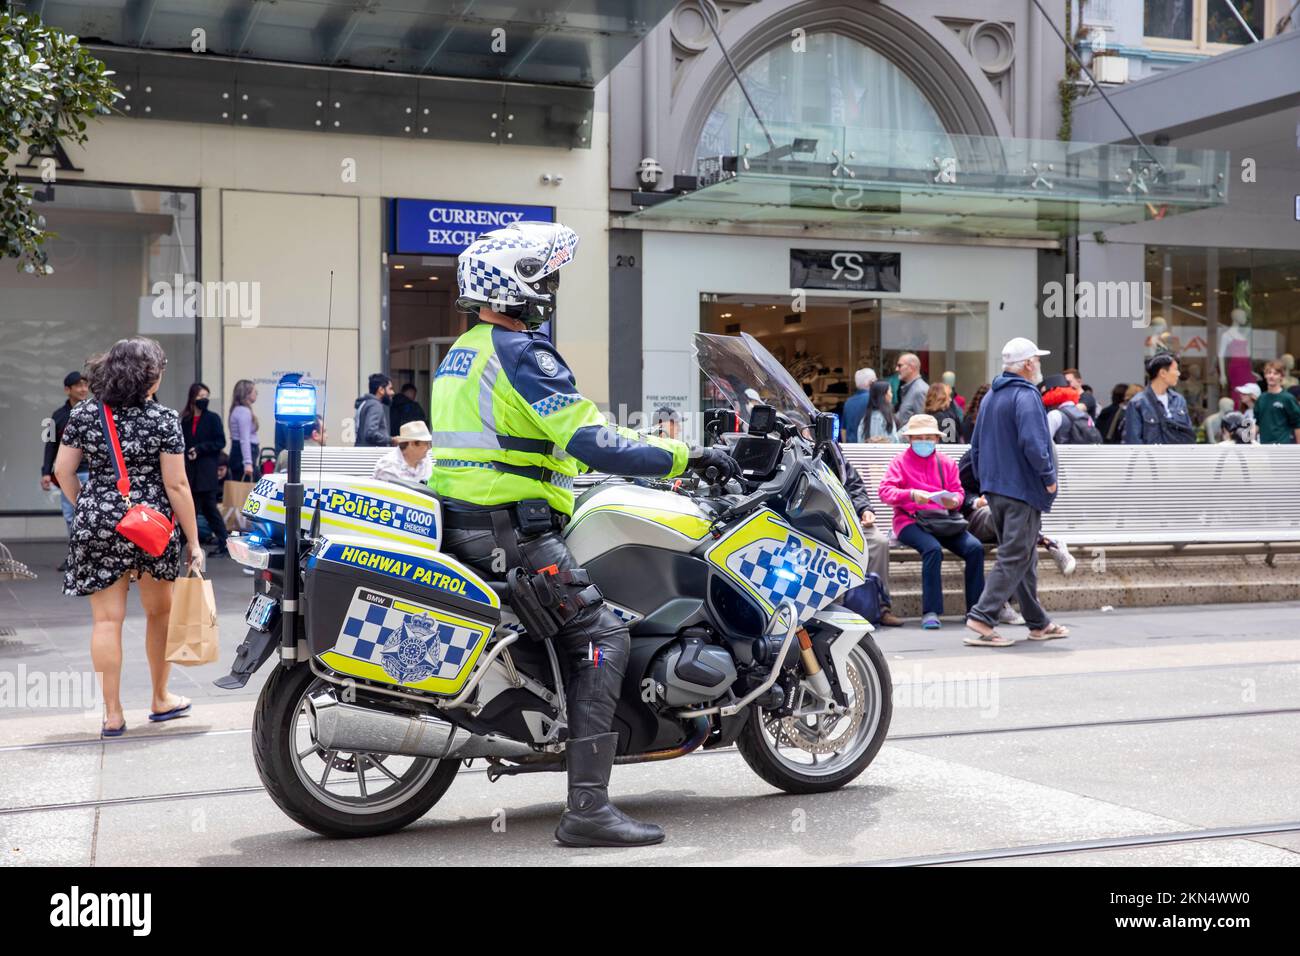 Un policier australien sur l'autoroute BMW moto de patrouille observe des manifestations de rue dans le centre-ville de Melbourne, Victoria, Australie Banque D'Images